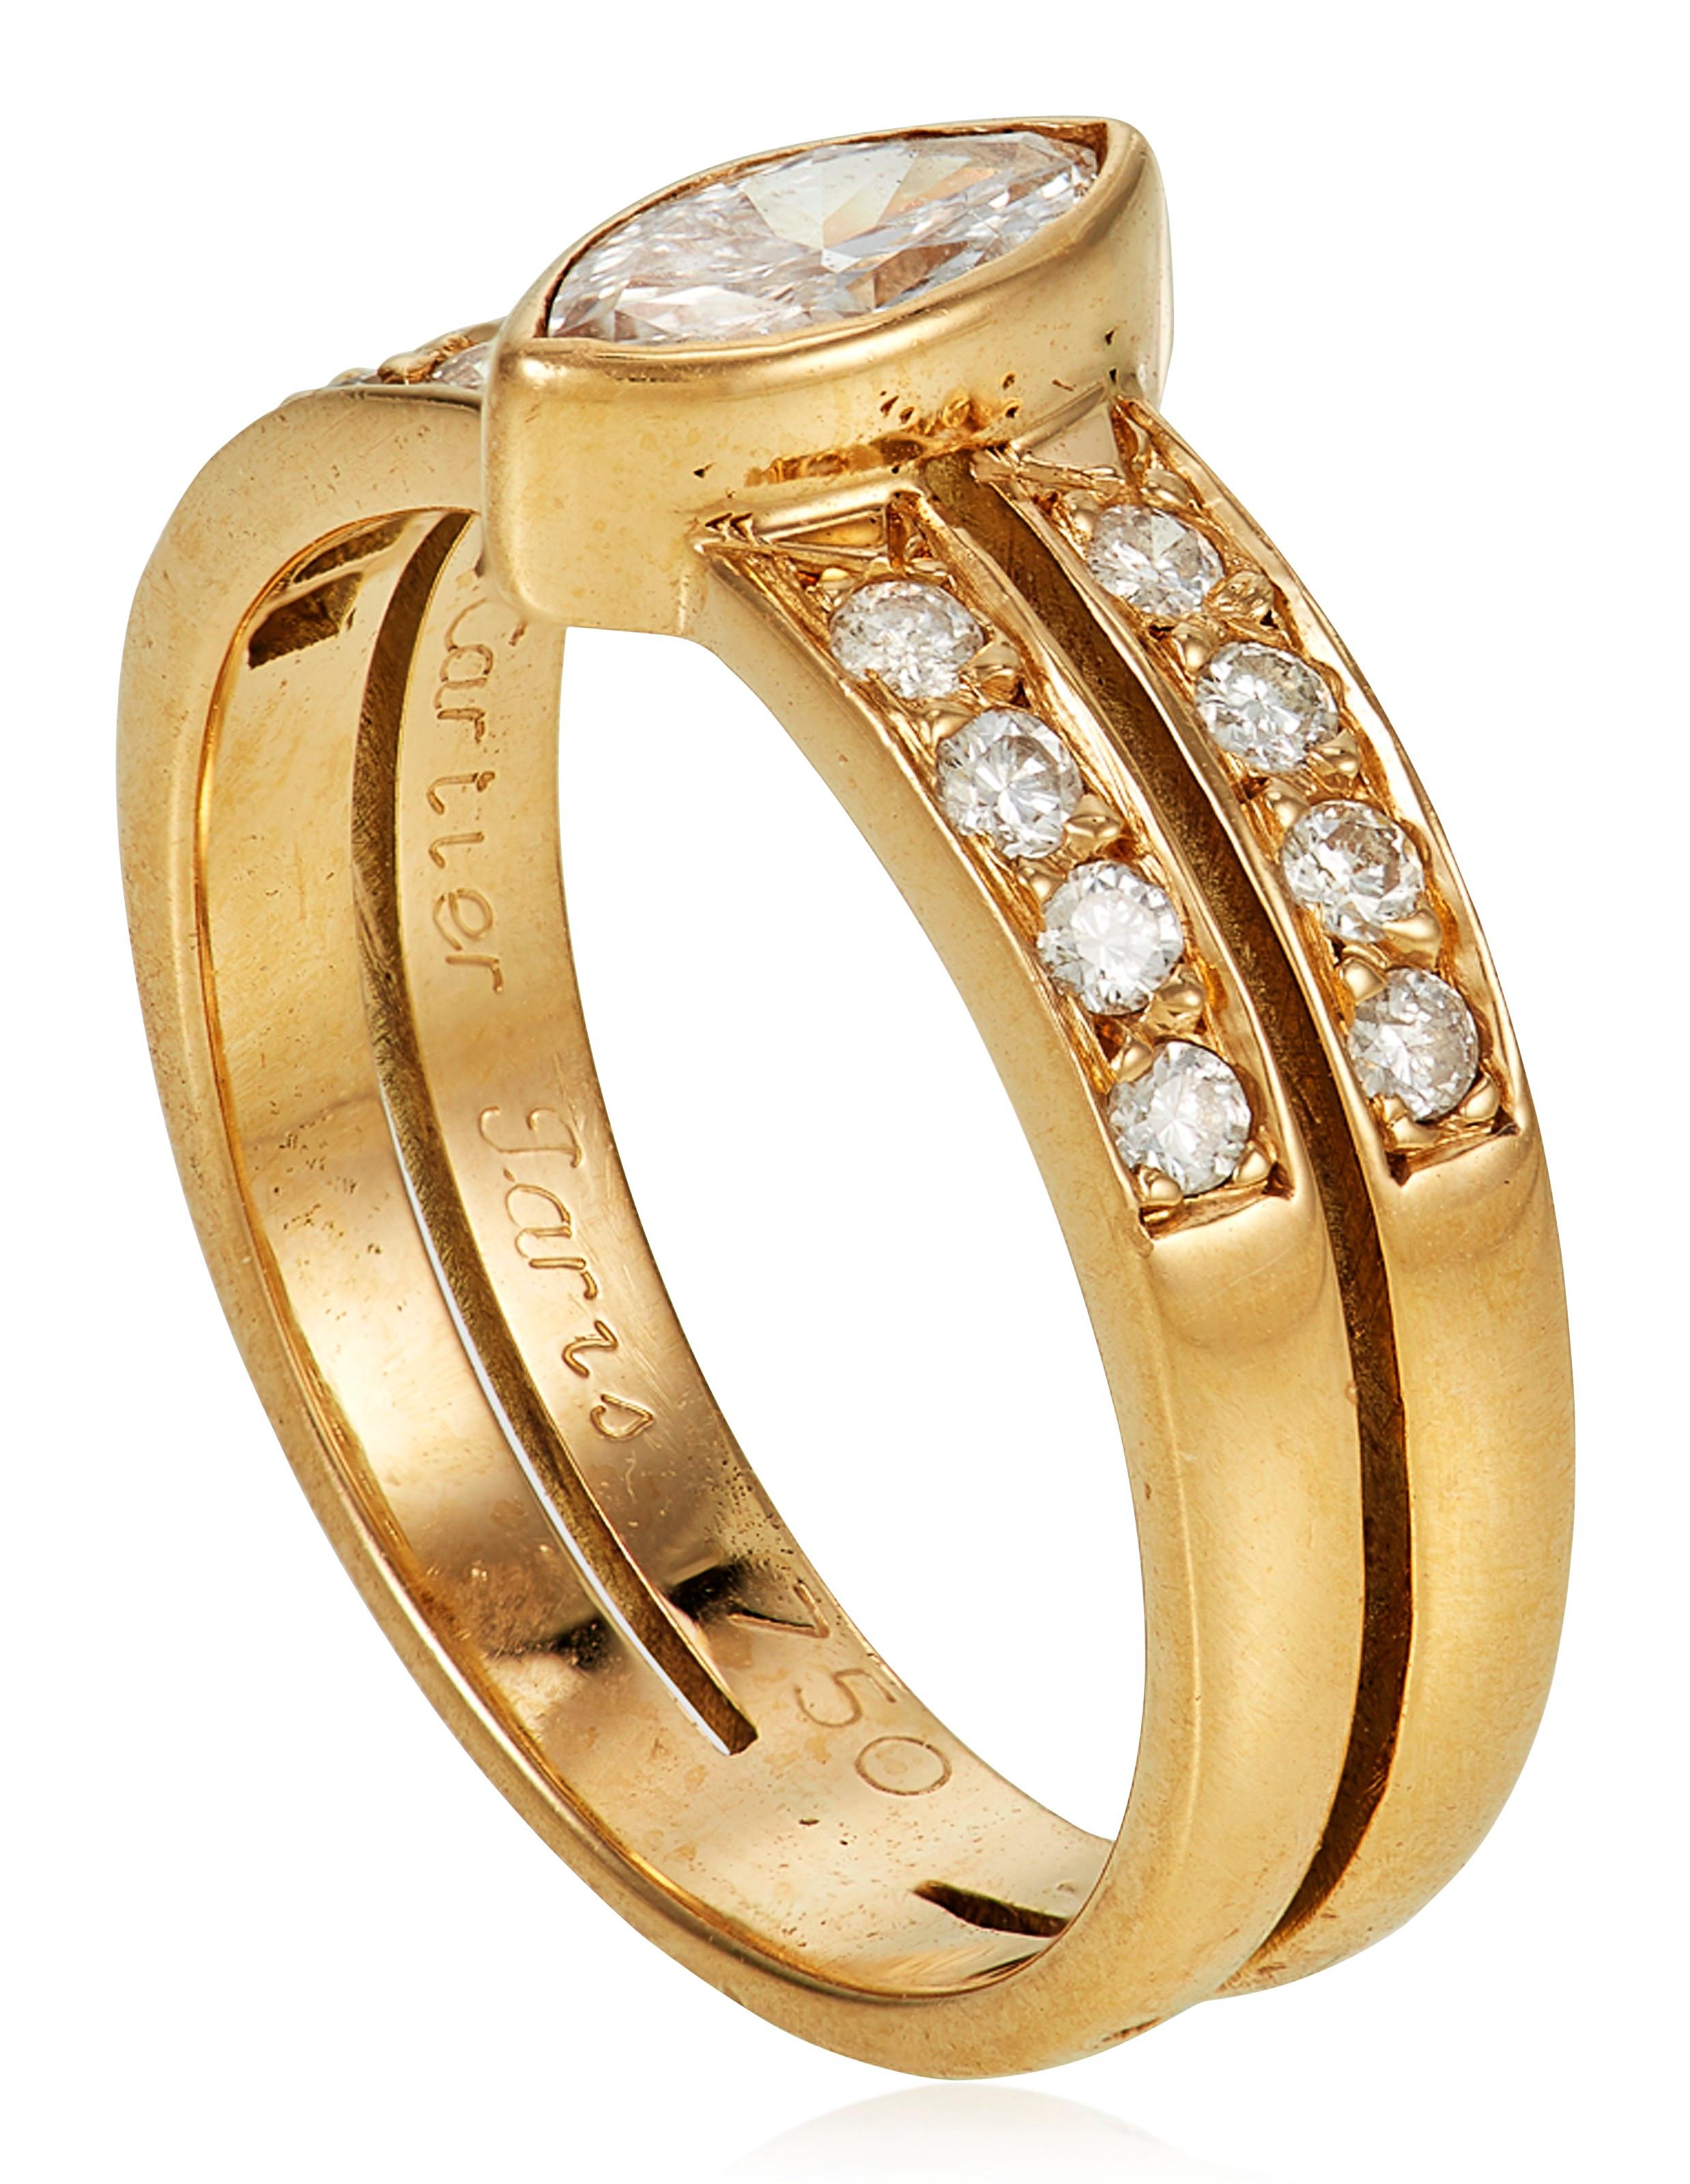 Ein einzigartiger 18k Gelbgold Diamant Cartier Ring. Der Ring besteht aus einem Diamanten im Marquise-Schliff in einer Rubover-Fassung mit einem Gesamtgewicht von ca. 0,40 Karat, Farbe G und Reinheit VvS. Ergänzt wird der Mittelstein durch zwei